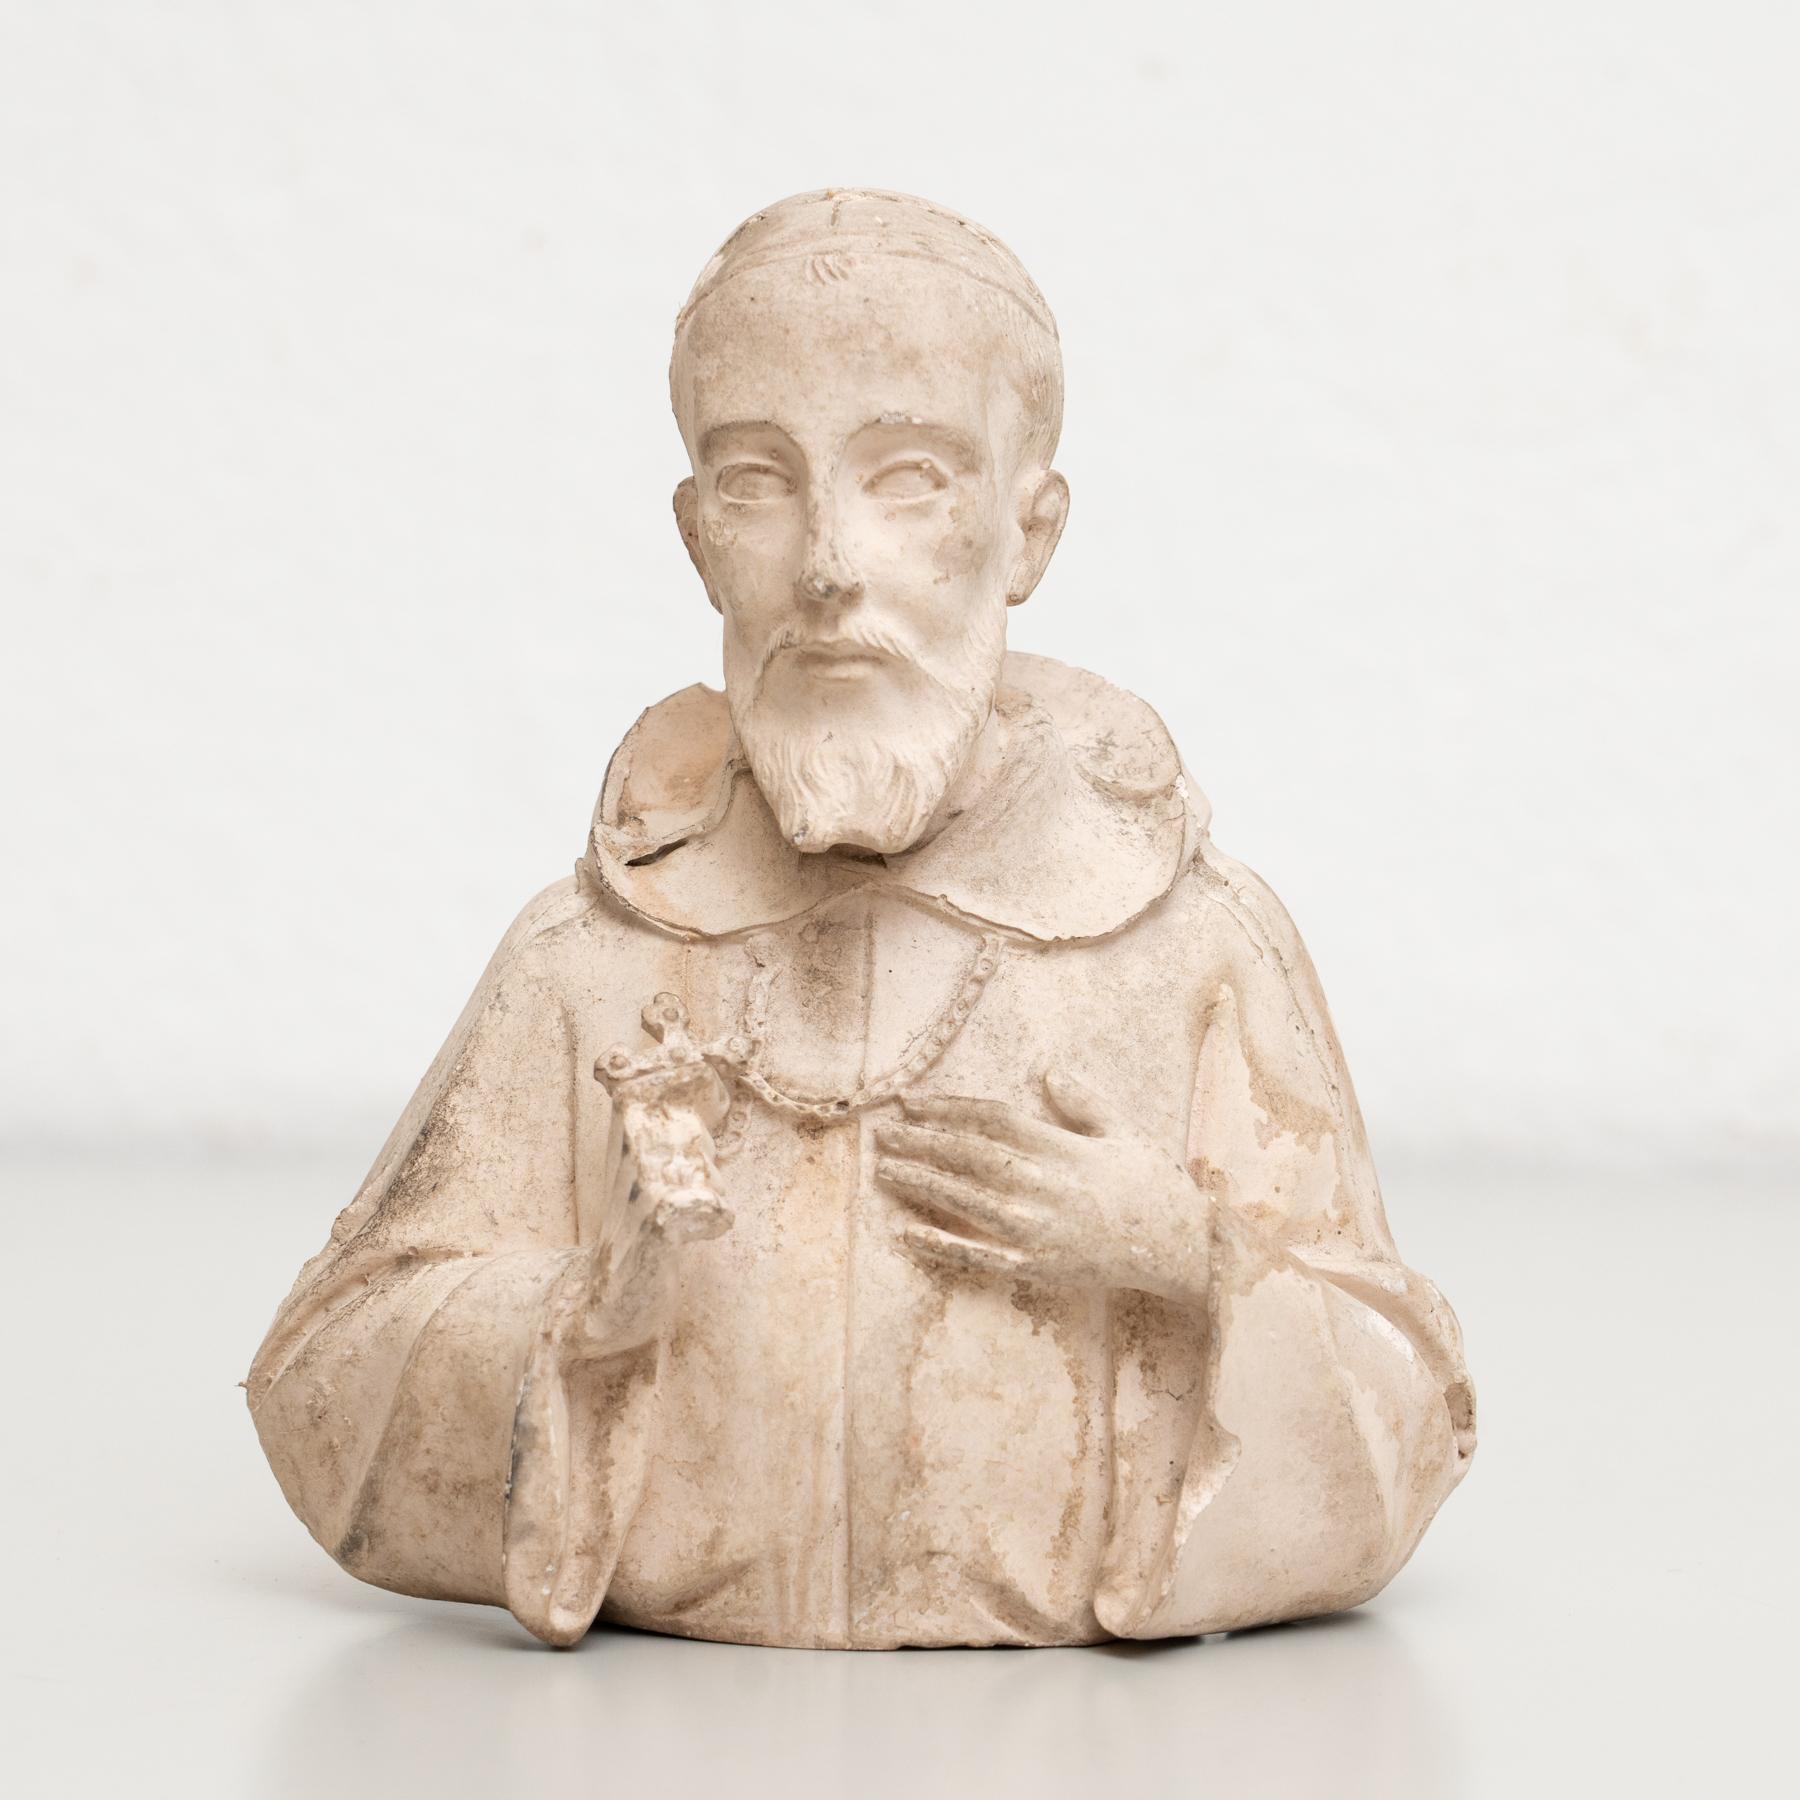 Figurine religieuse traditionnelle en plâtre représentant un saint.

Fabriqué dans un atelier catalan traditionnel à Olot, en Espagne, vers 1950.

En état d'origine, avec une usure mineure conforme à l'âge et à l'utilisation, préservant une belle